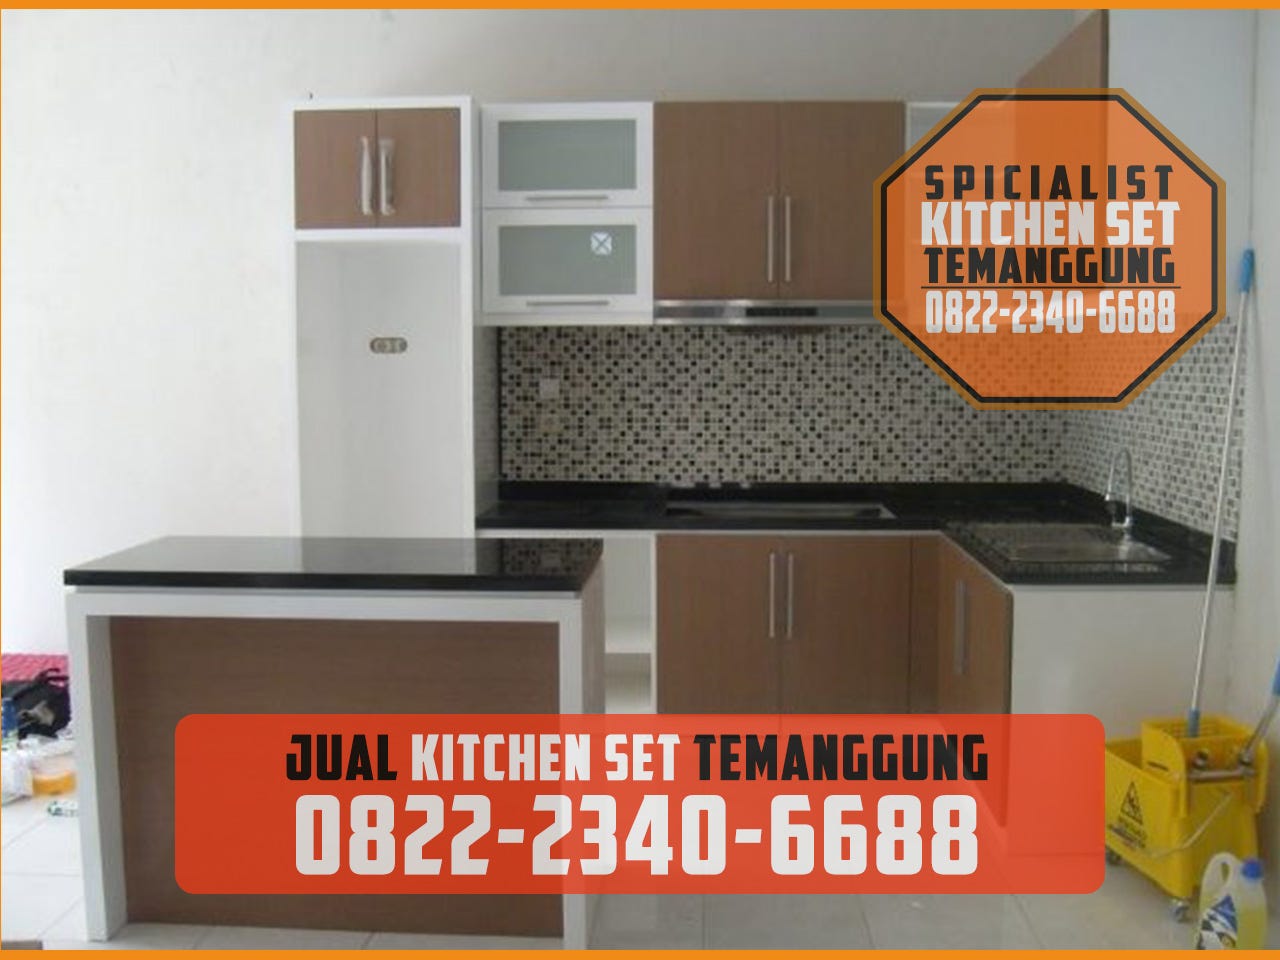 SPECIALIST 082223406688 Kitchen Set Minimalis Temanggung